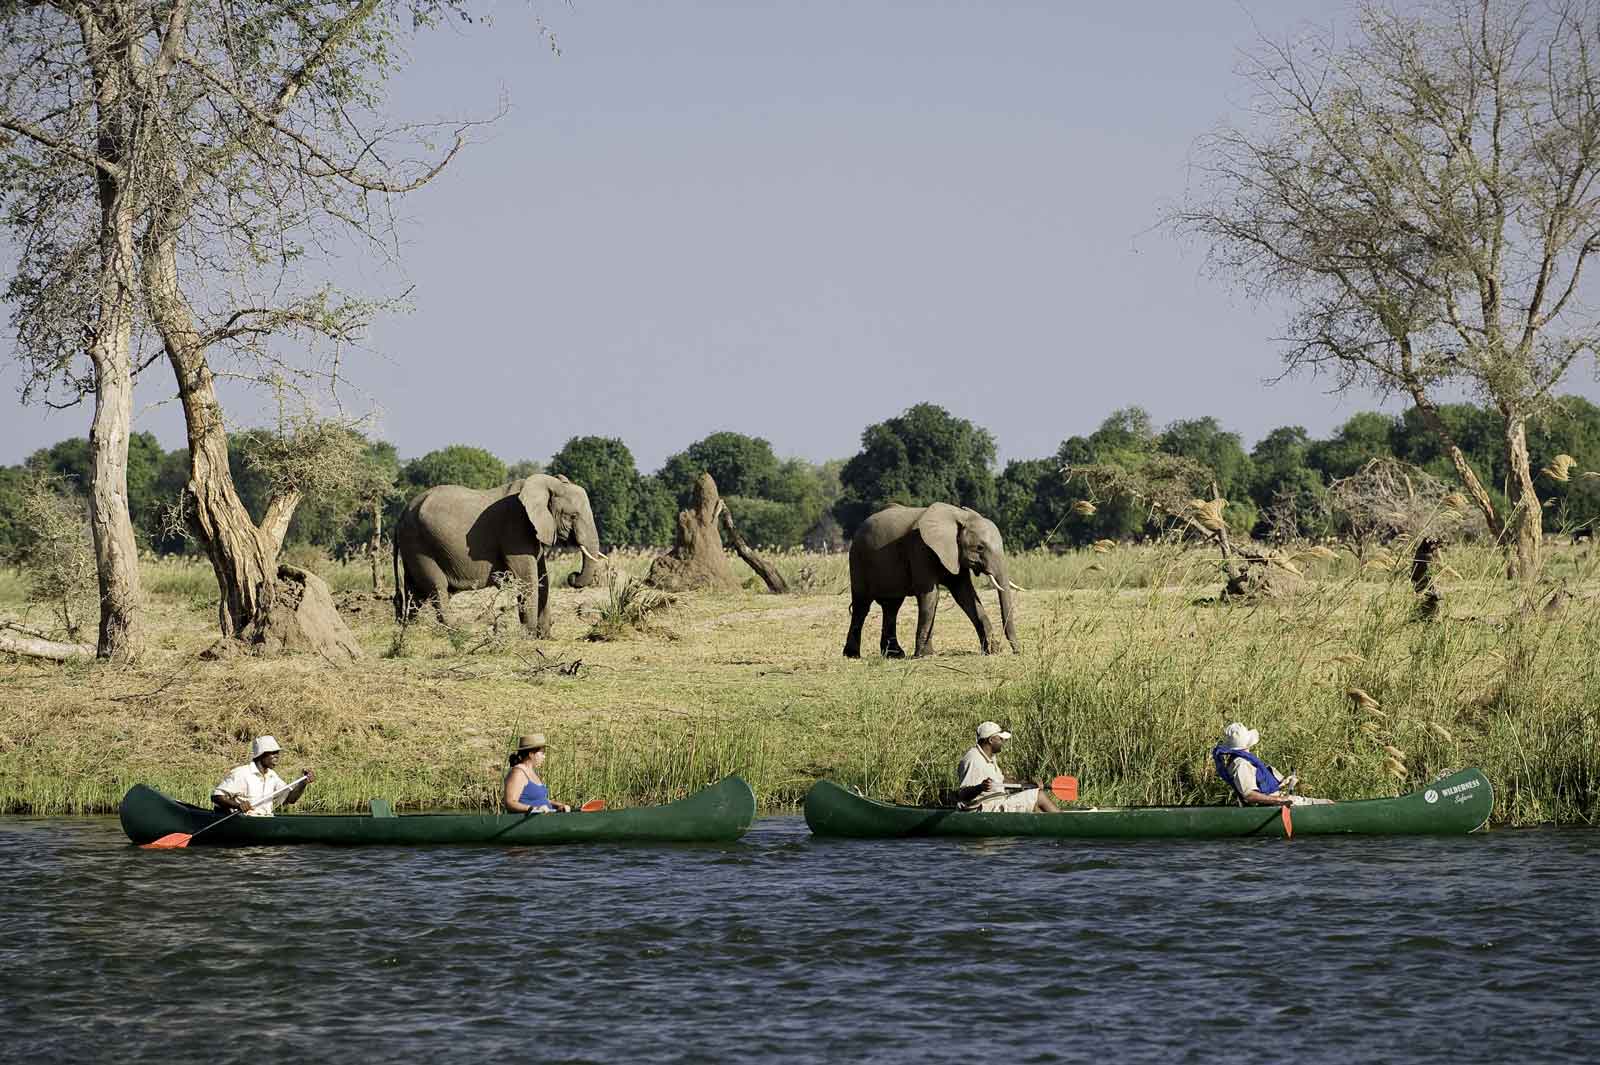 chikwenya Camp-canoeing_elephnat-sighting_ Mana Pools National Park _Zimbabwe_Destination